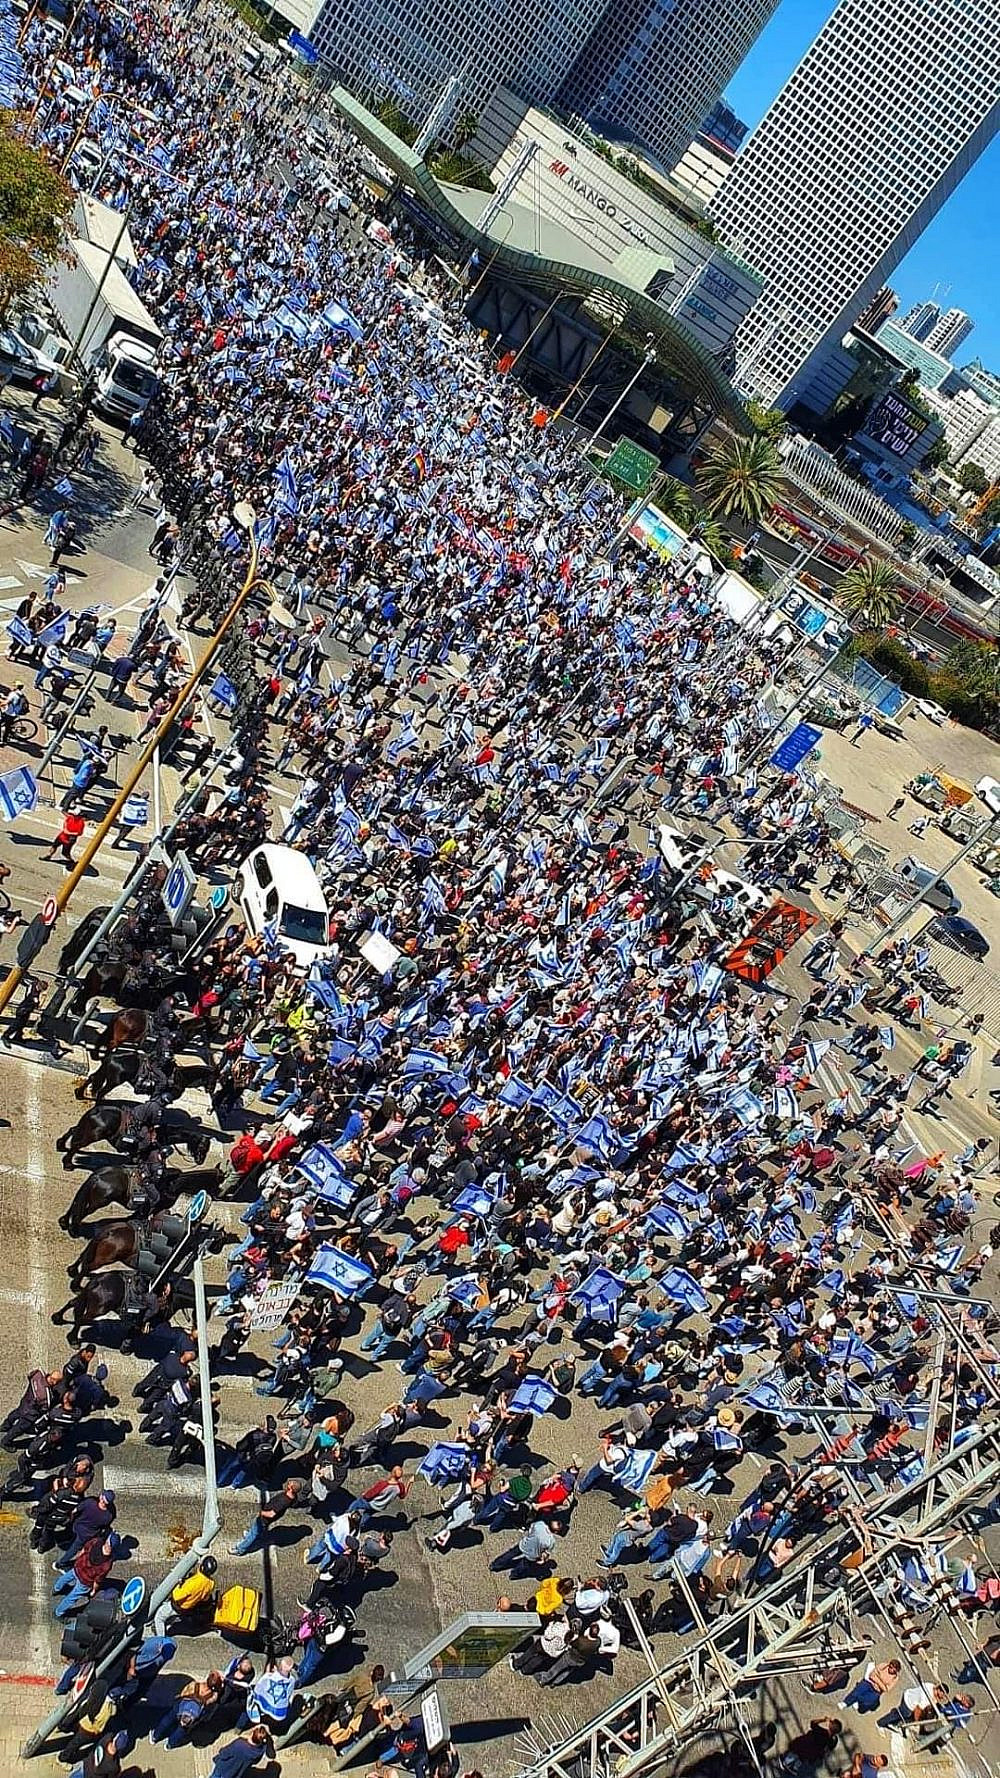 מפגינים בצומת קפלן עזריאלי, יום ההתנגדות לדיקטטורה 9.3 (צילוןם באדיבות מטה המאבק)